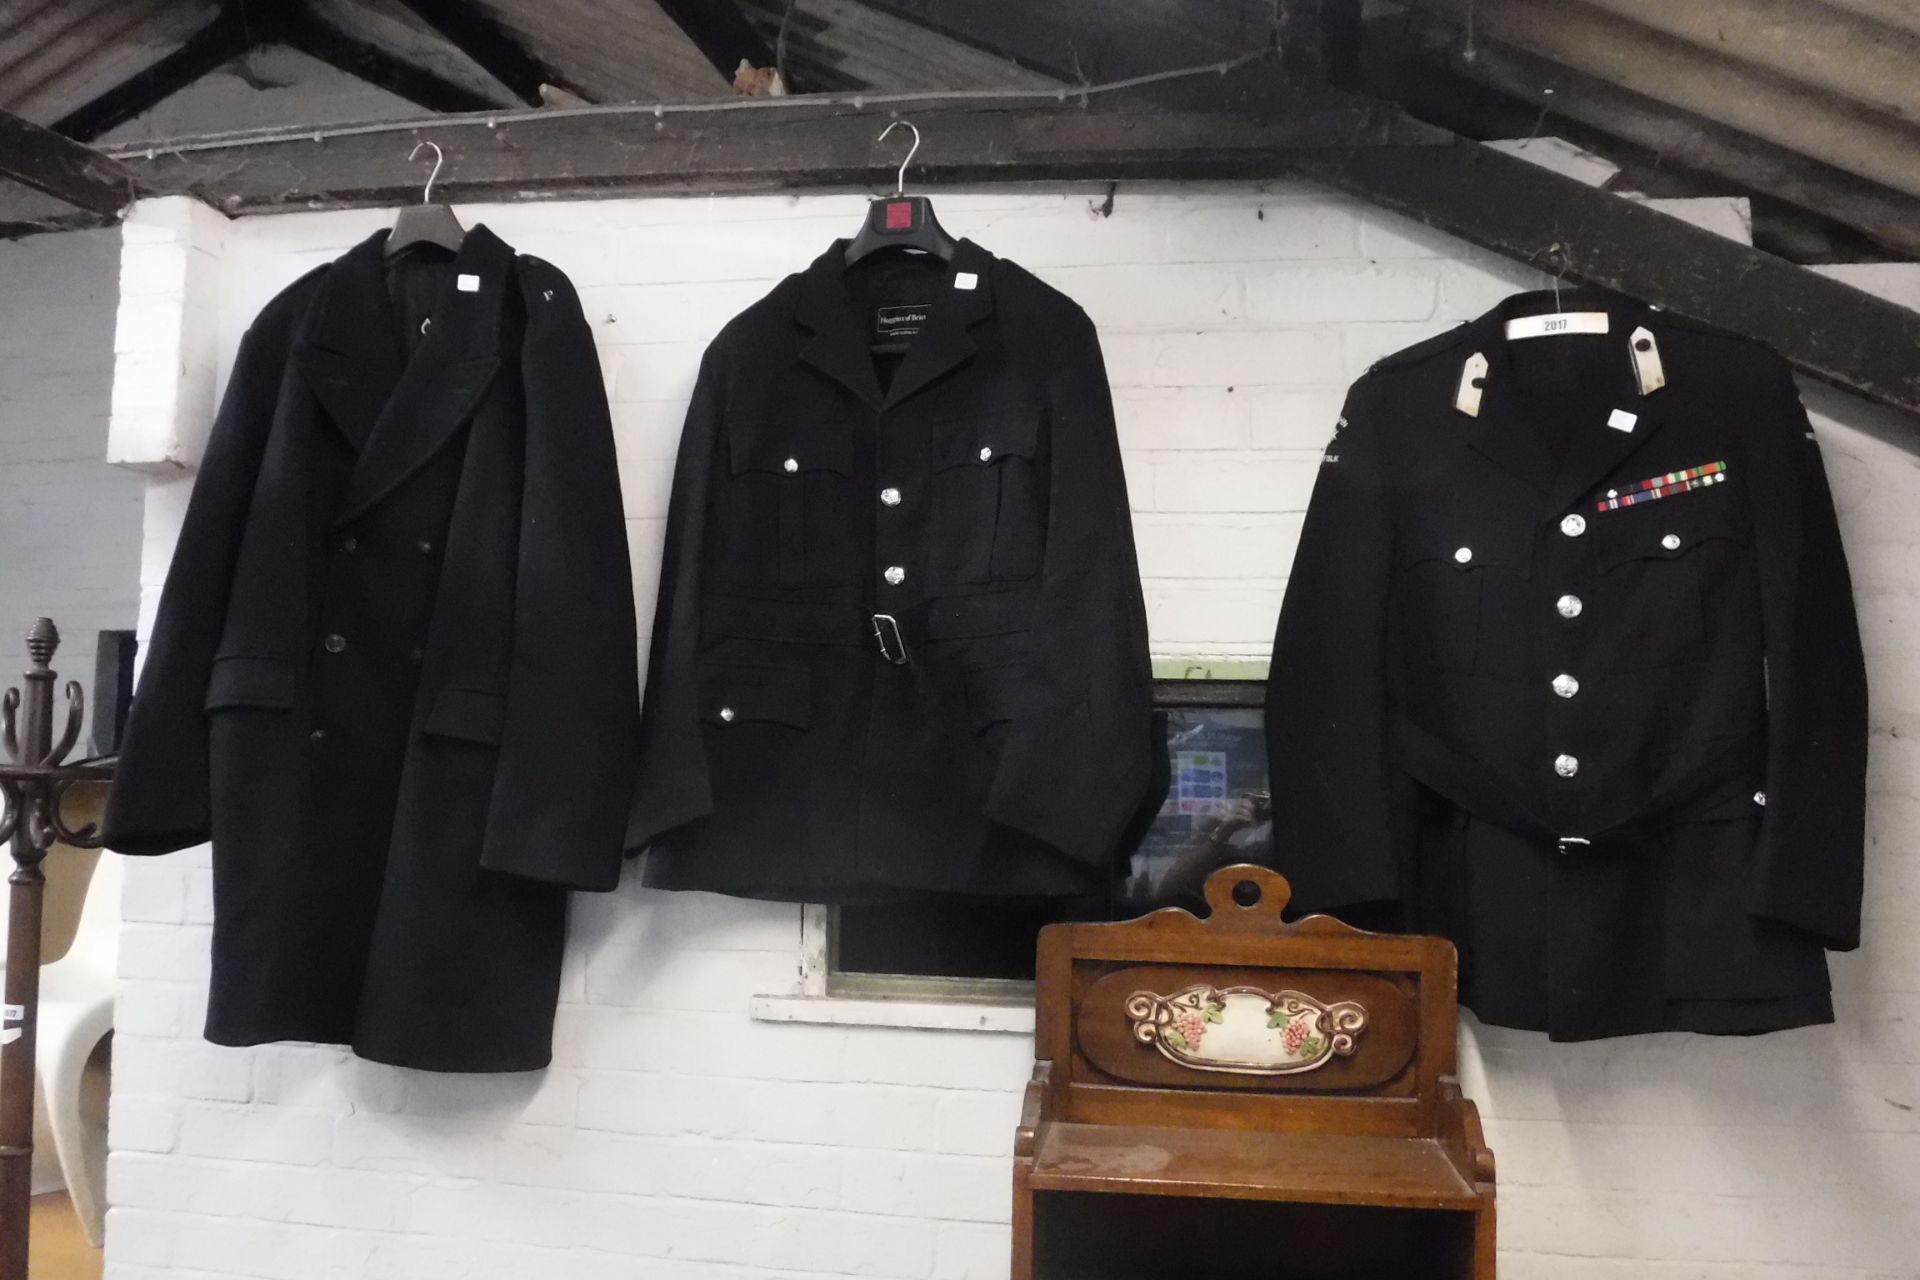 Vintage St Johns Ambulance, Norfolk Jacket, one further British Transport Police jacket and a